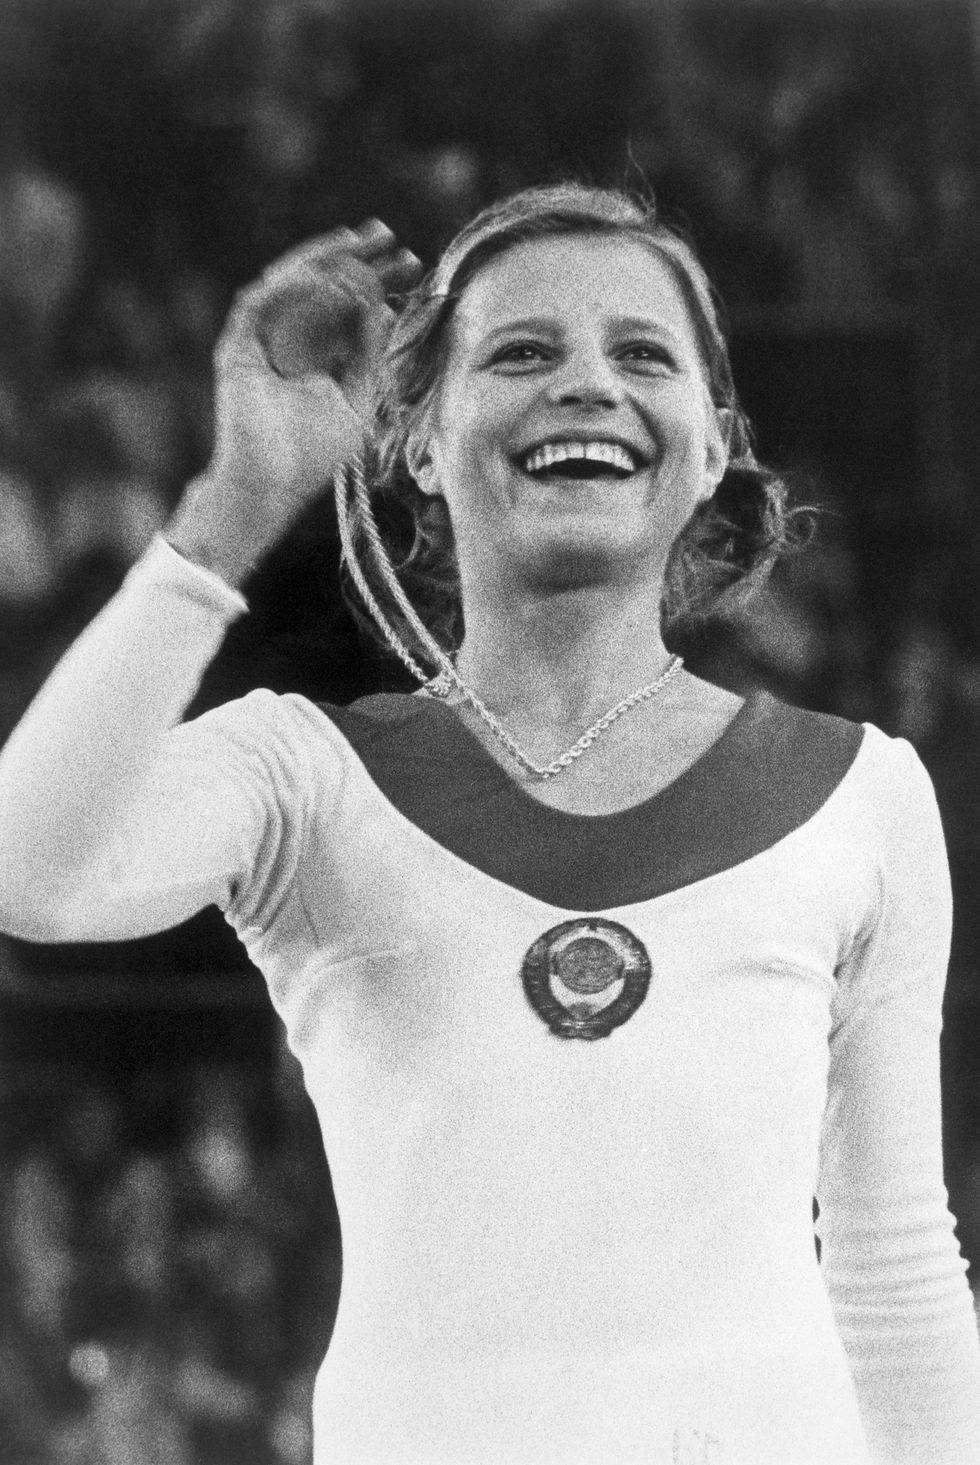 gymnast olga korbut holding gold medal, 1972